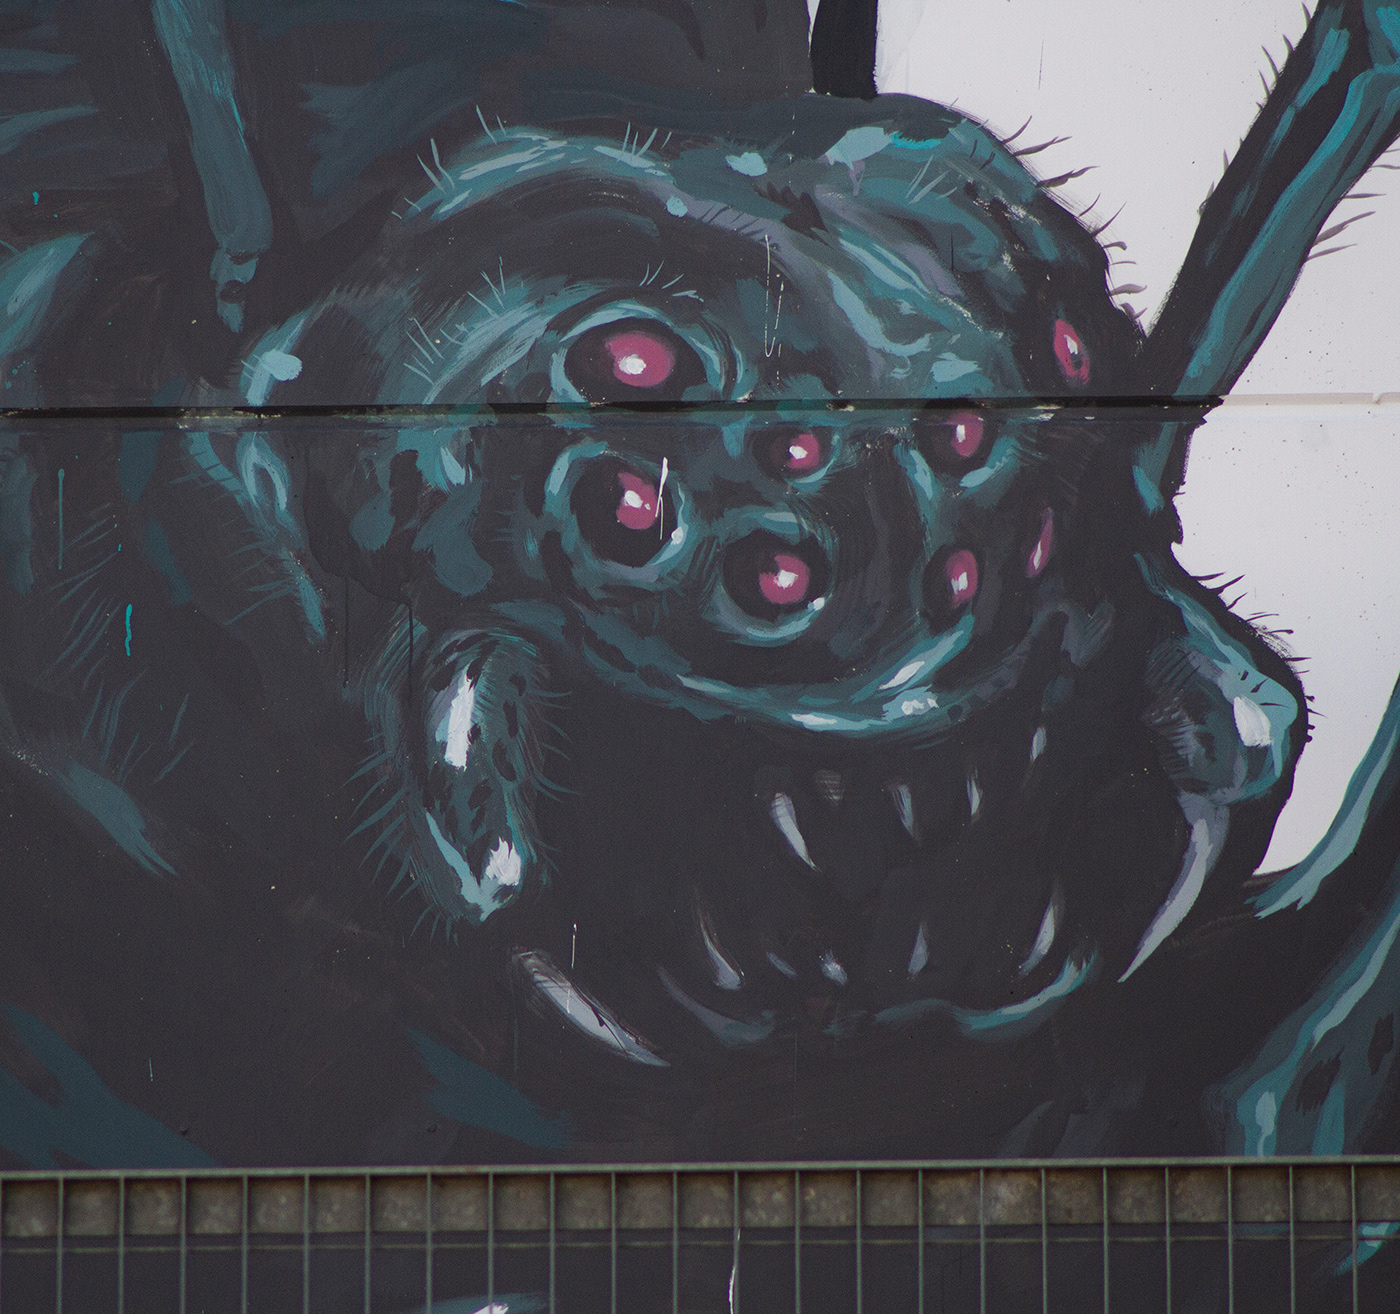 Cinema creatures dragon fantasy kingkong monsters Movies Nature urban art wall painting